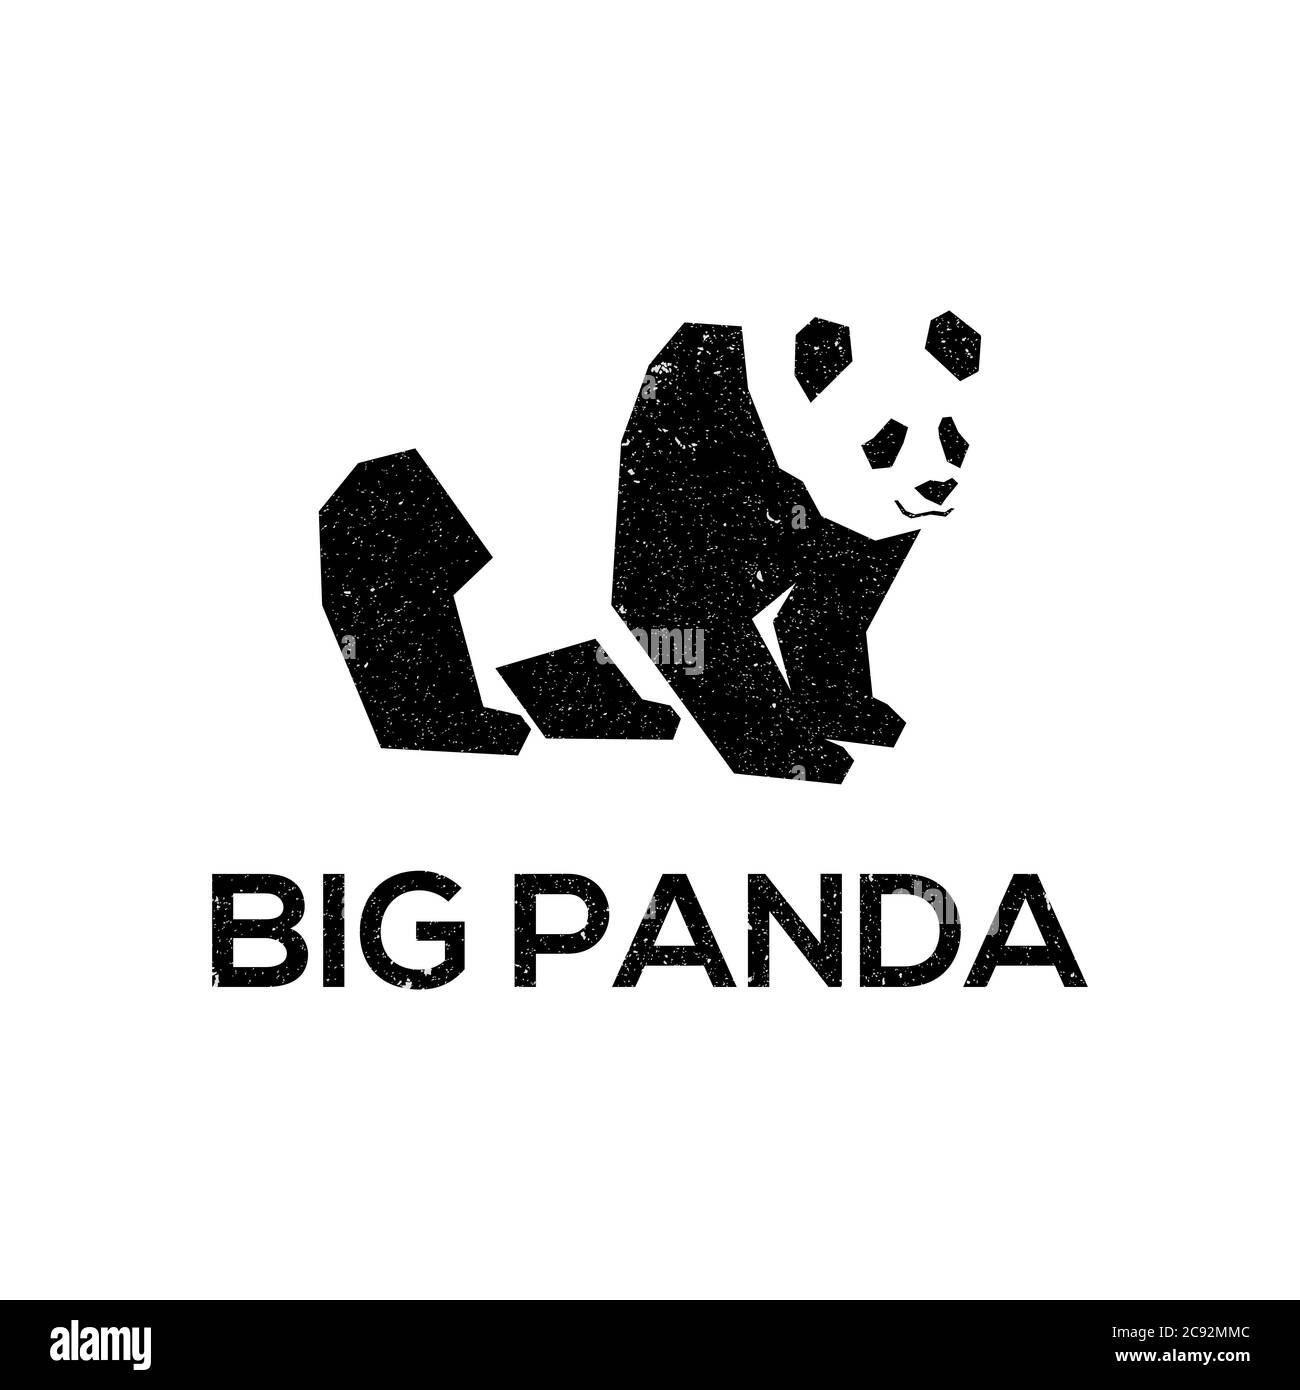 Große Panda Logo Designs Vorlage. Am besten für Logo-Design auf Ihrer Website, auf T-Shirts, Visitenkarten, Social Media, Label Stock Vektor